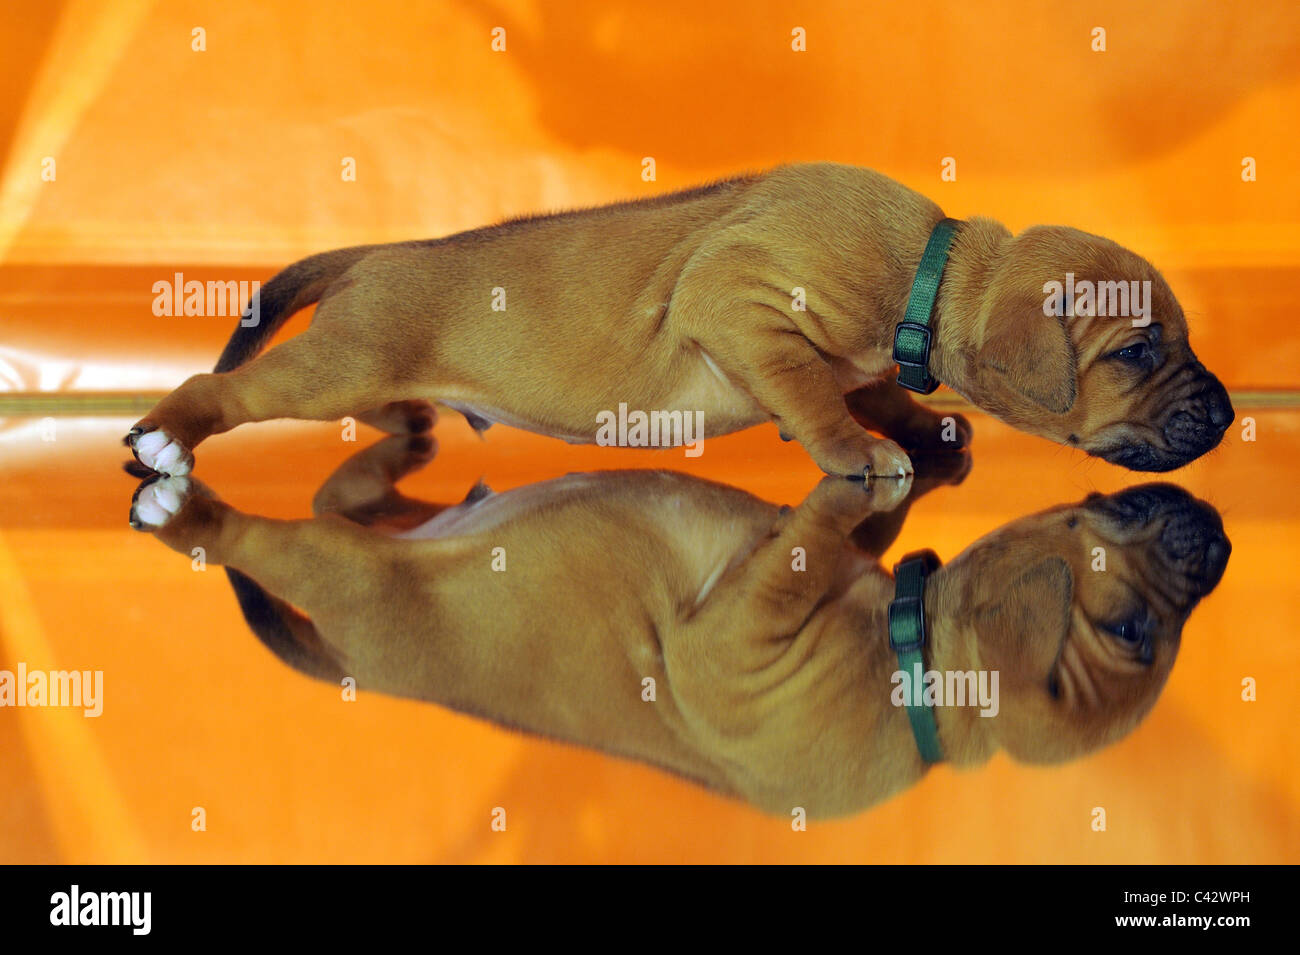 Le Rhodesian Ridgeback (Canis lupus familiaris). Marcher sur un chiot de couleur orange de la surface de mise en miroir. L'Allemagne. Banque D'Images